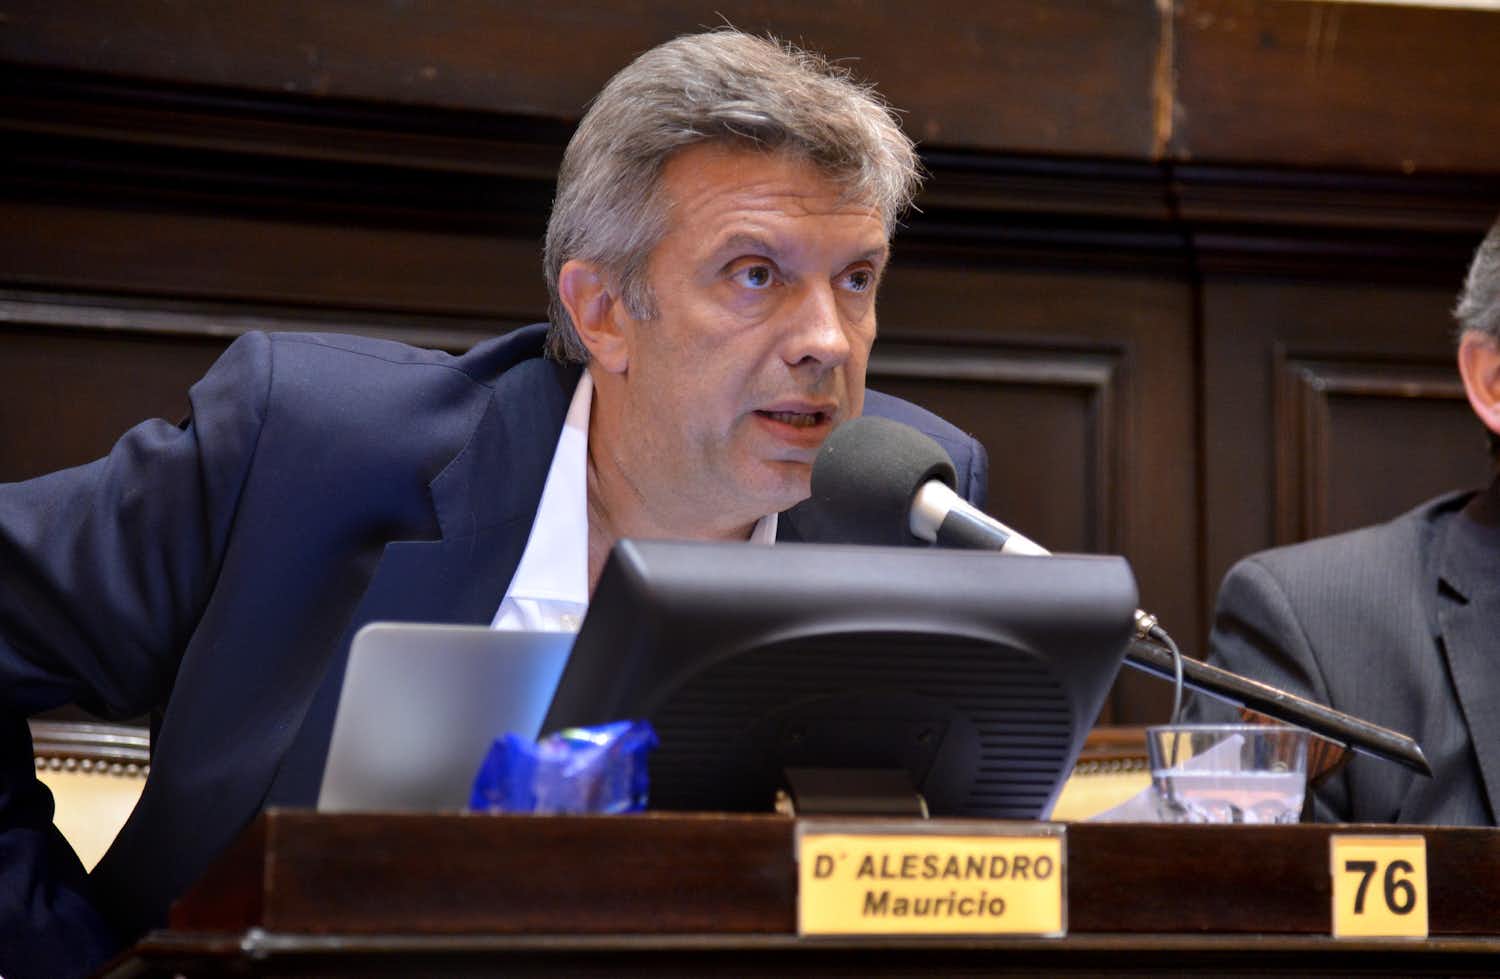 D’Alessandro confirmó que buscará renovar su banca de diputado, aunque por la quinta sección electoral